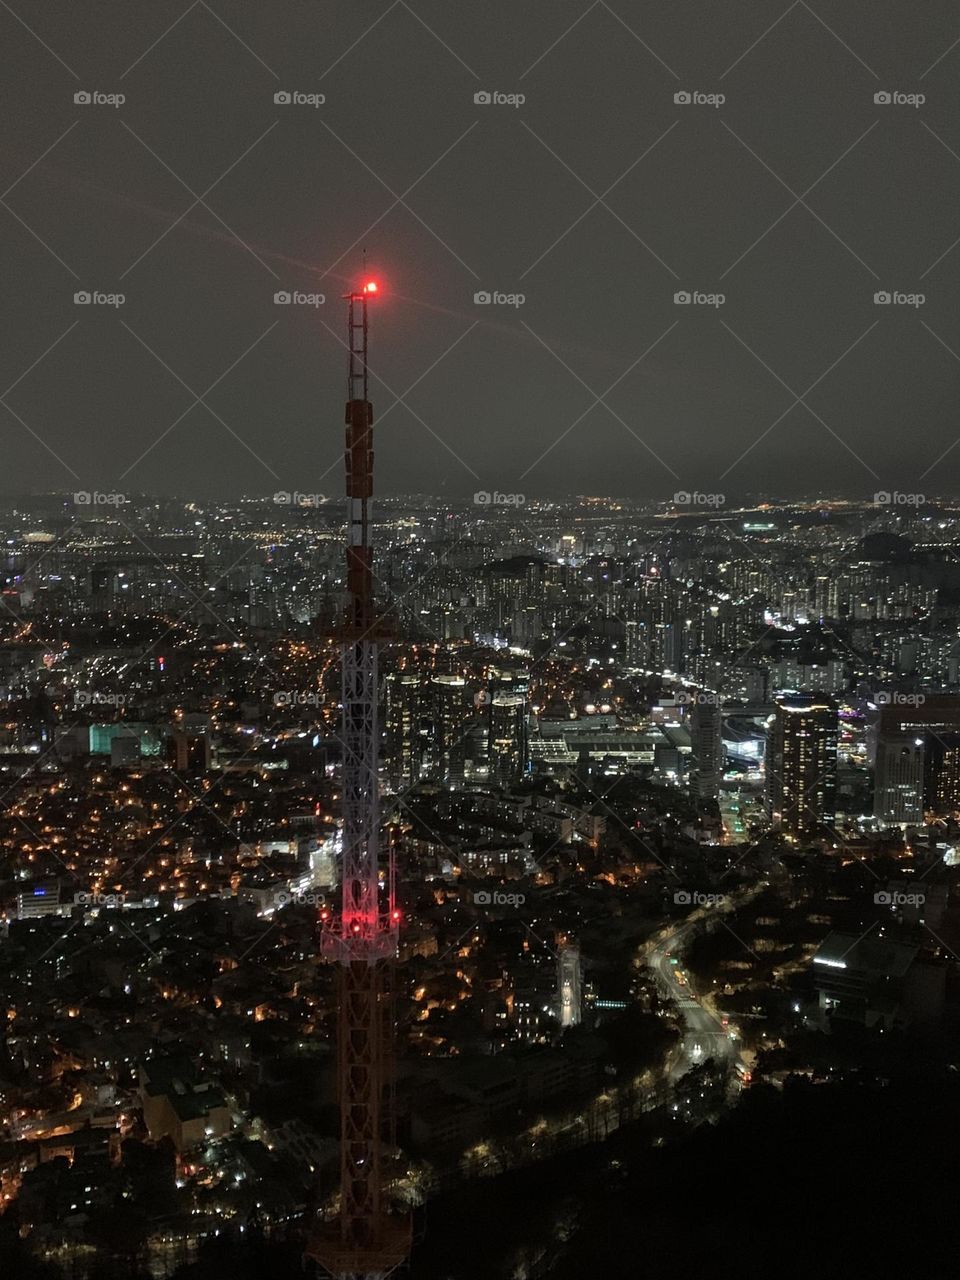 Korea tower night view